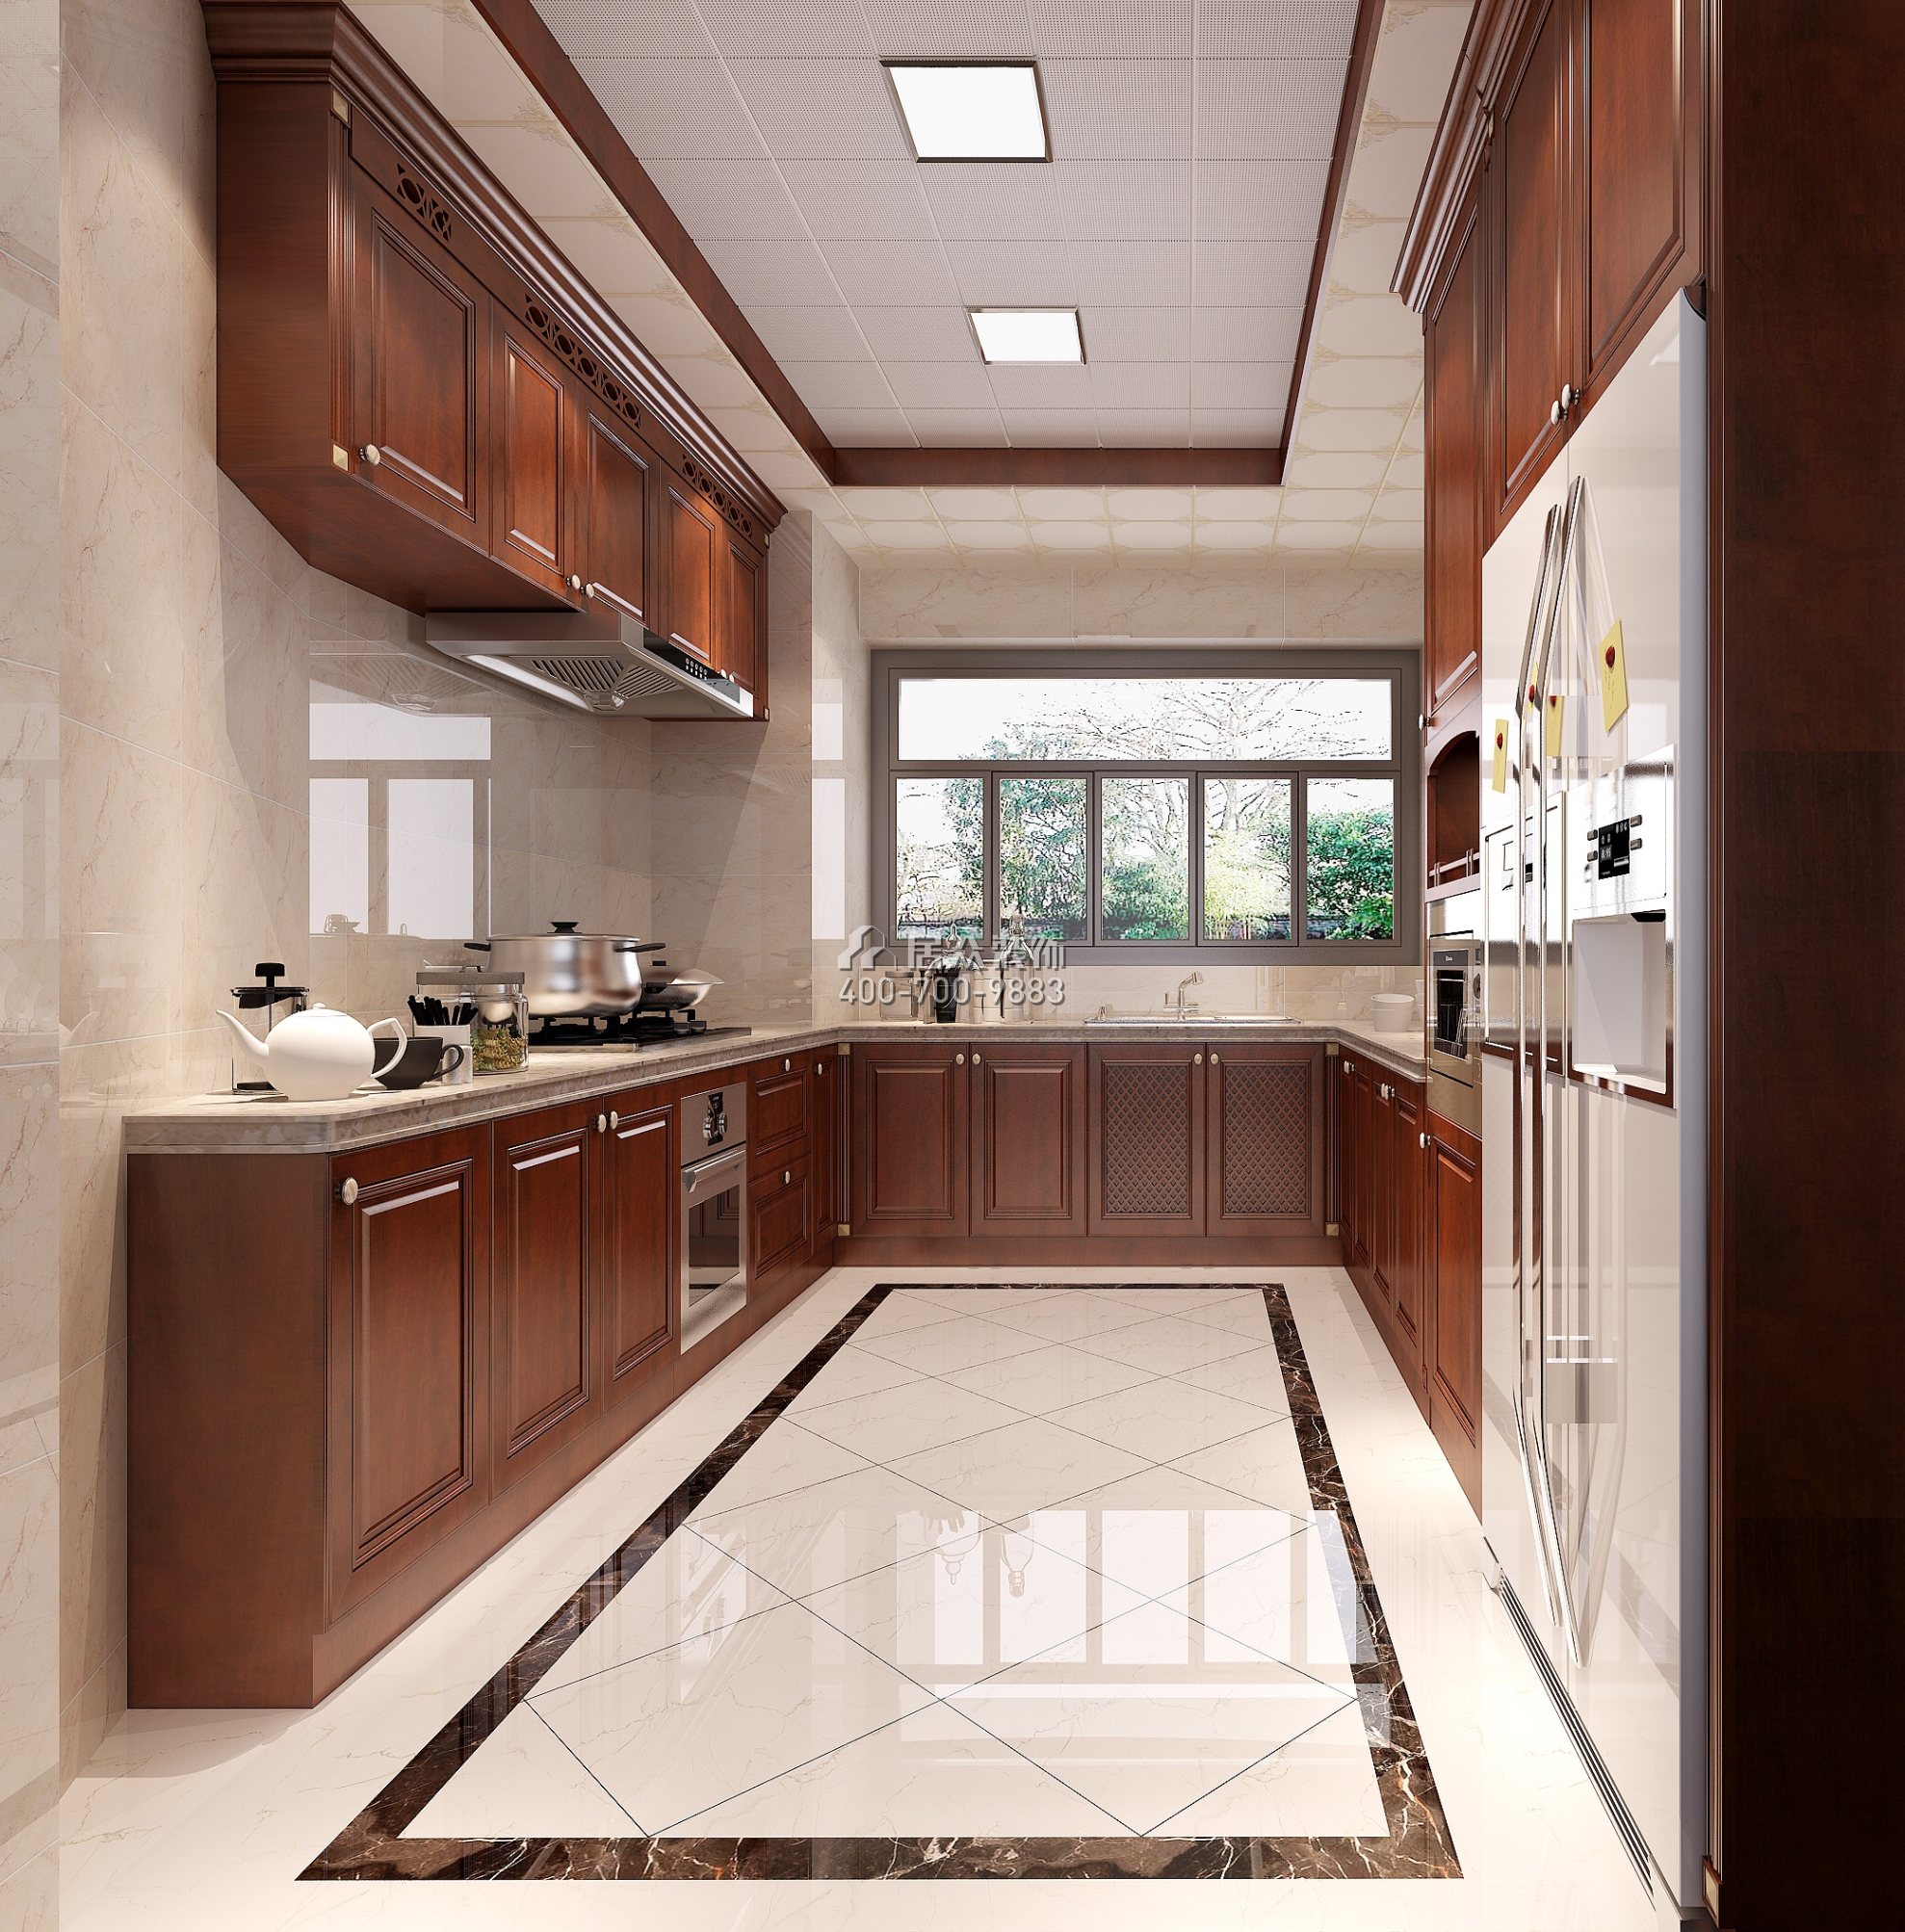 星河丹堤180平方米欧式风格平层户型厨房装修效果图